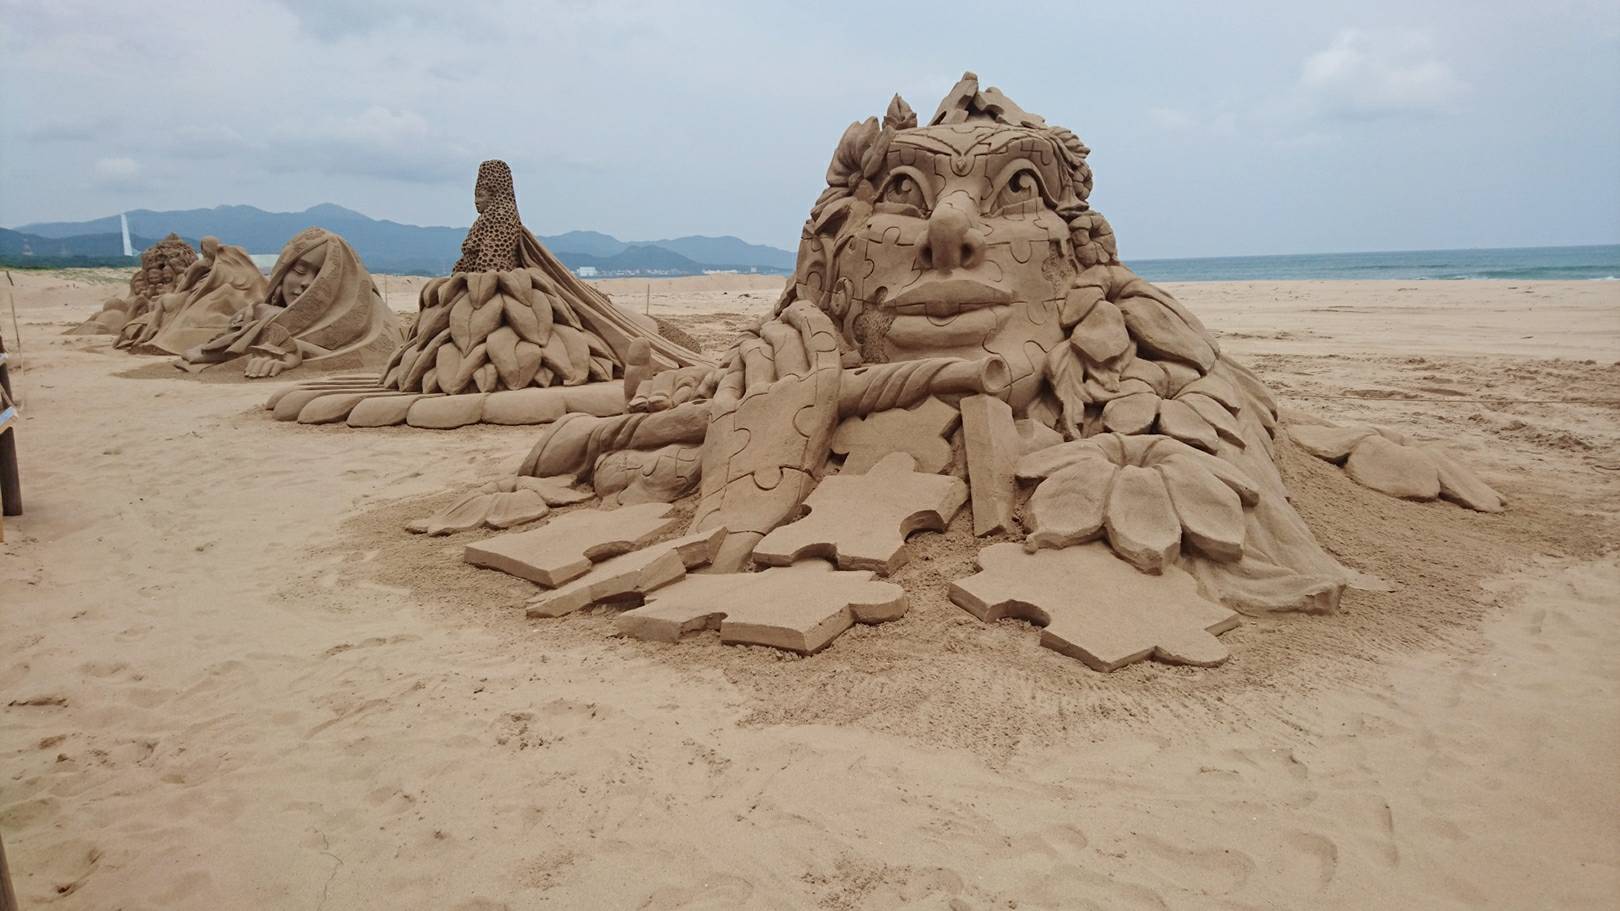 Karya pertama - "Inspirasi" oleh pemahat pasir Belgia Irina Sokolova